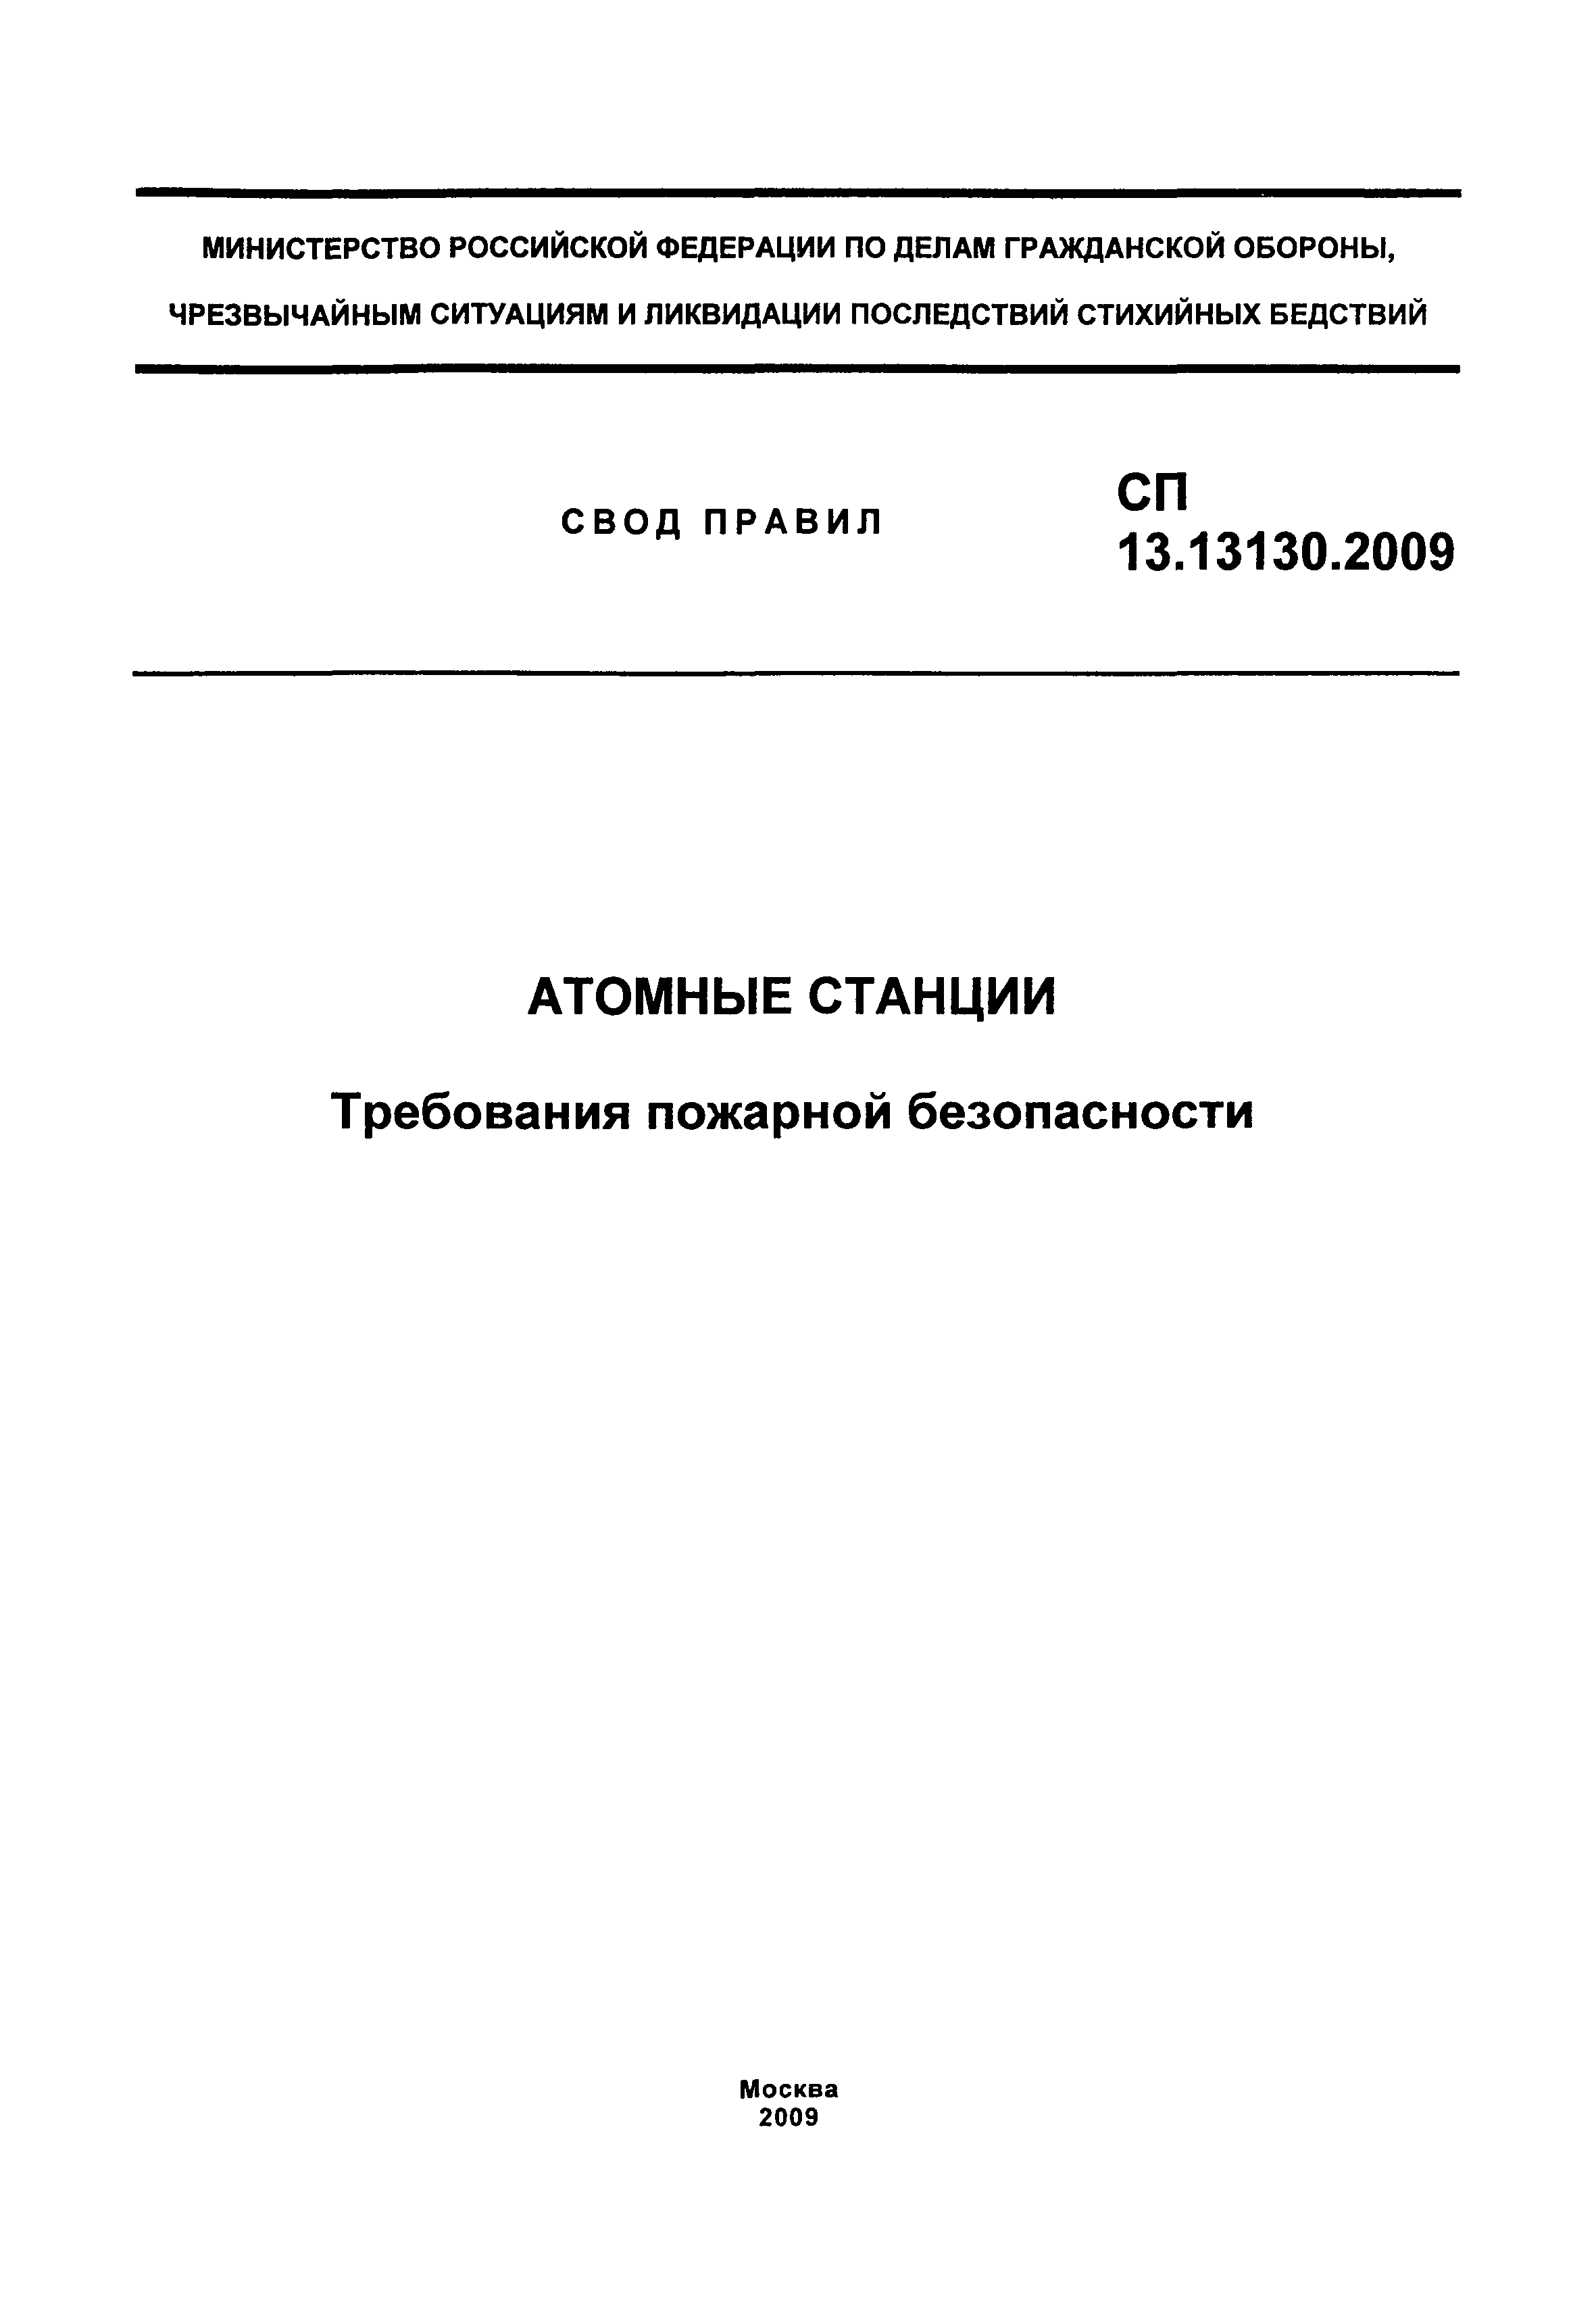 СП 13.13130.2009